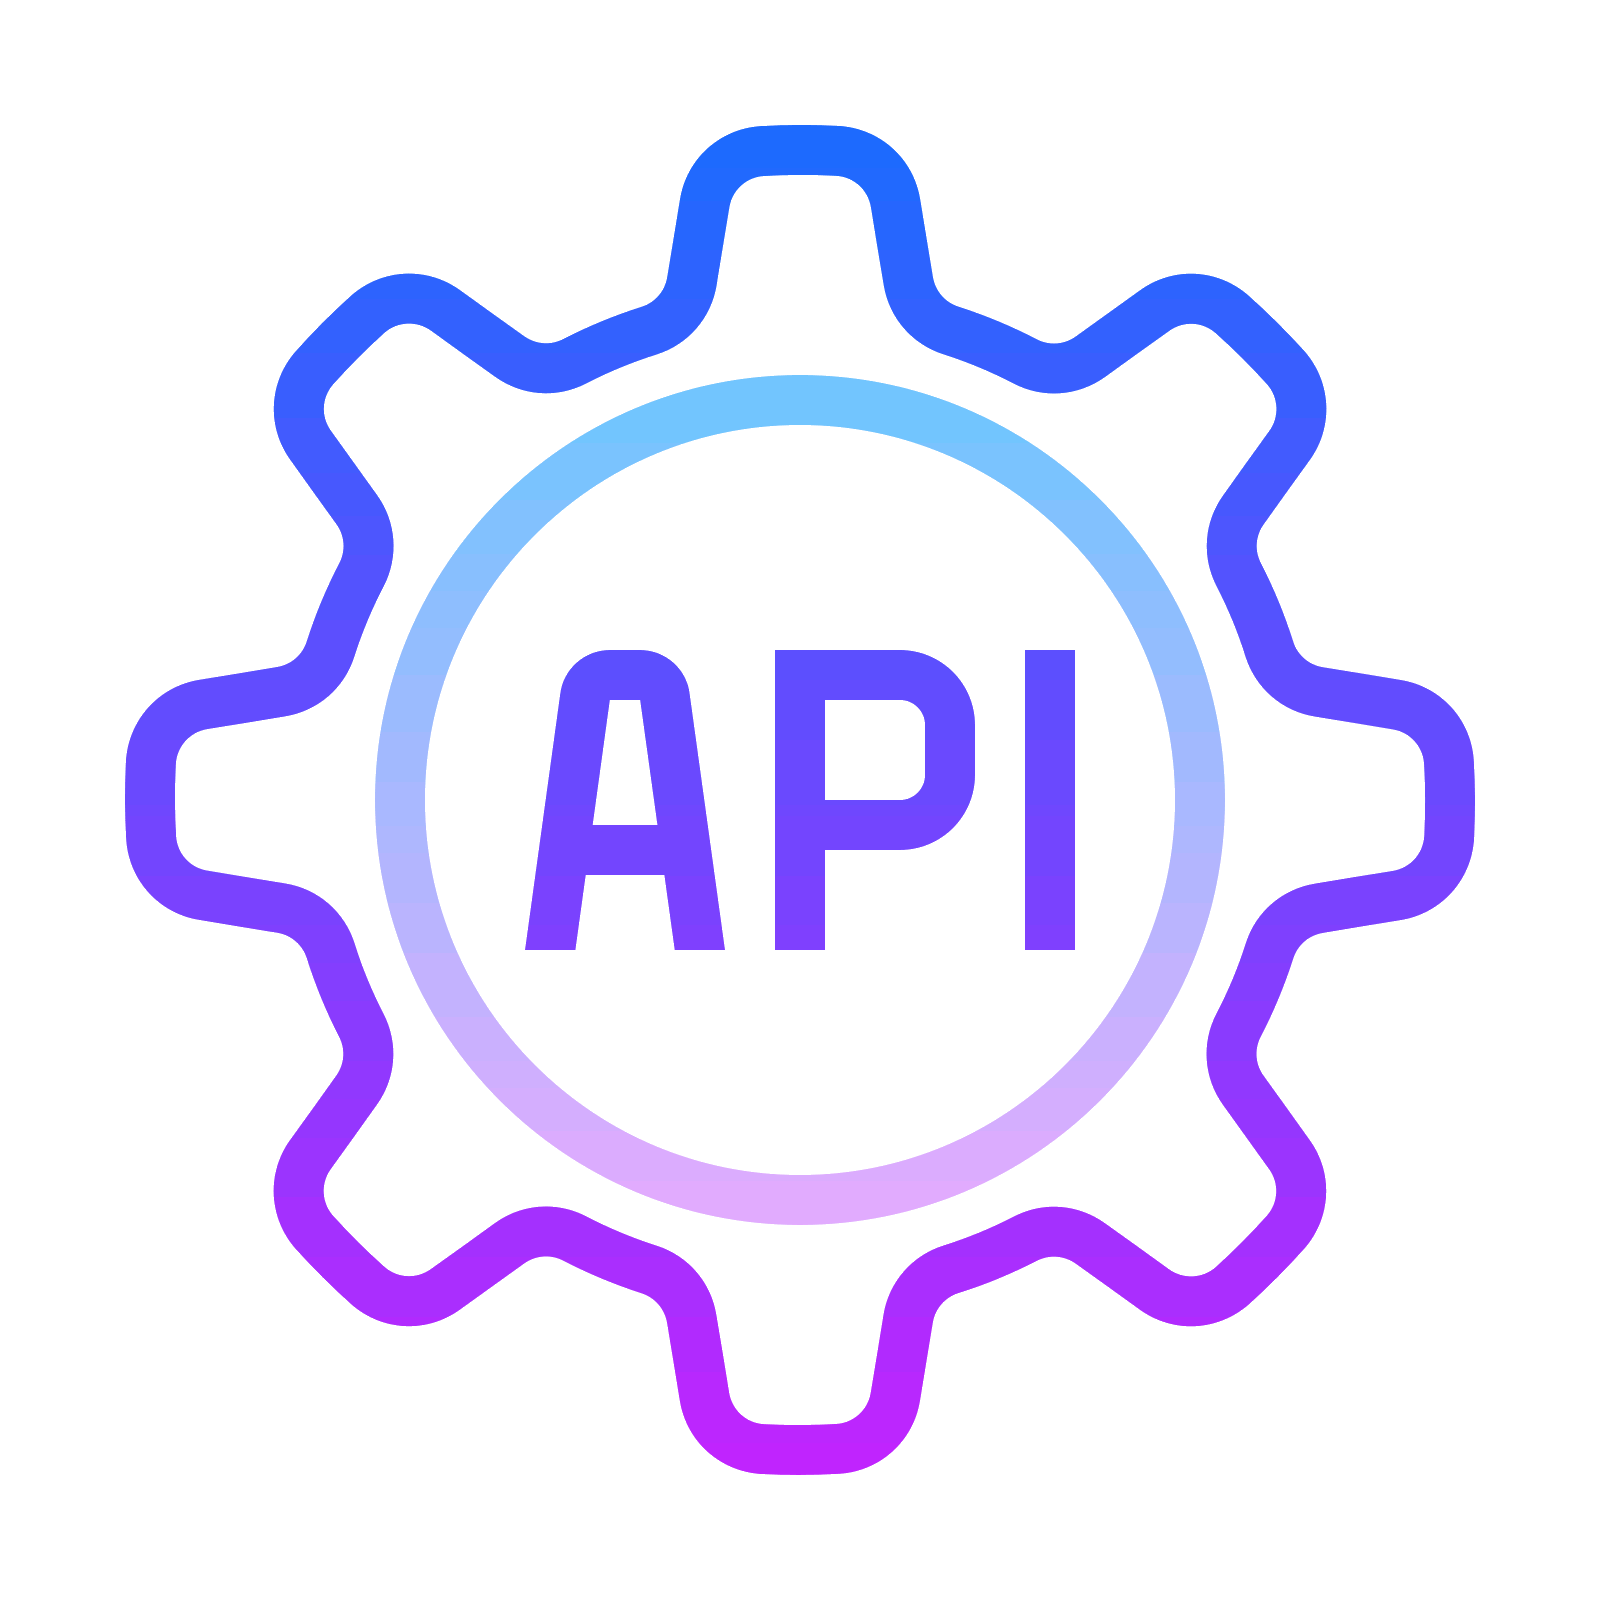 Api ping. API иконка. API интеграция. Интеграция значок. Rest API иконка.